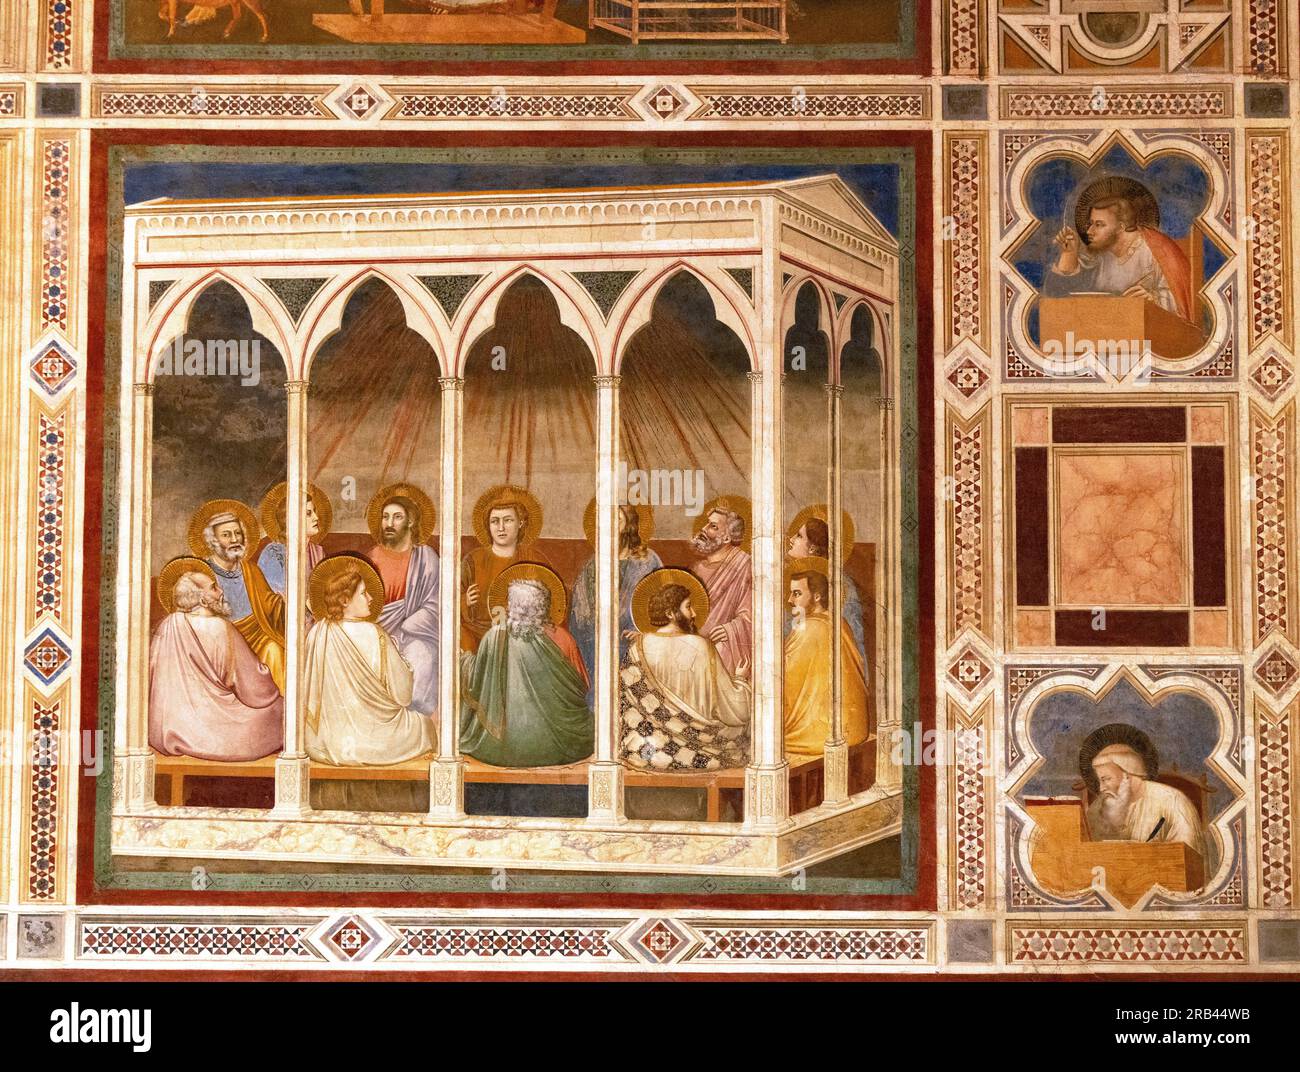 Fresques de Giotto, la chapelle Scrovegni, Padoue - peintures de la Renaissance italienne du 14e siècle de la vie du Christ ; vu ici «Pentecôte» ; Padoue Italie Banque D'Images